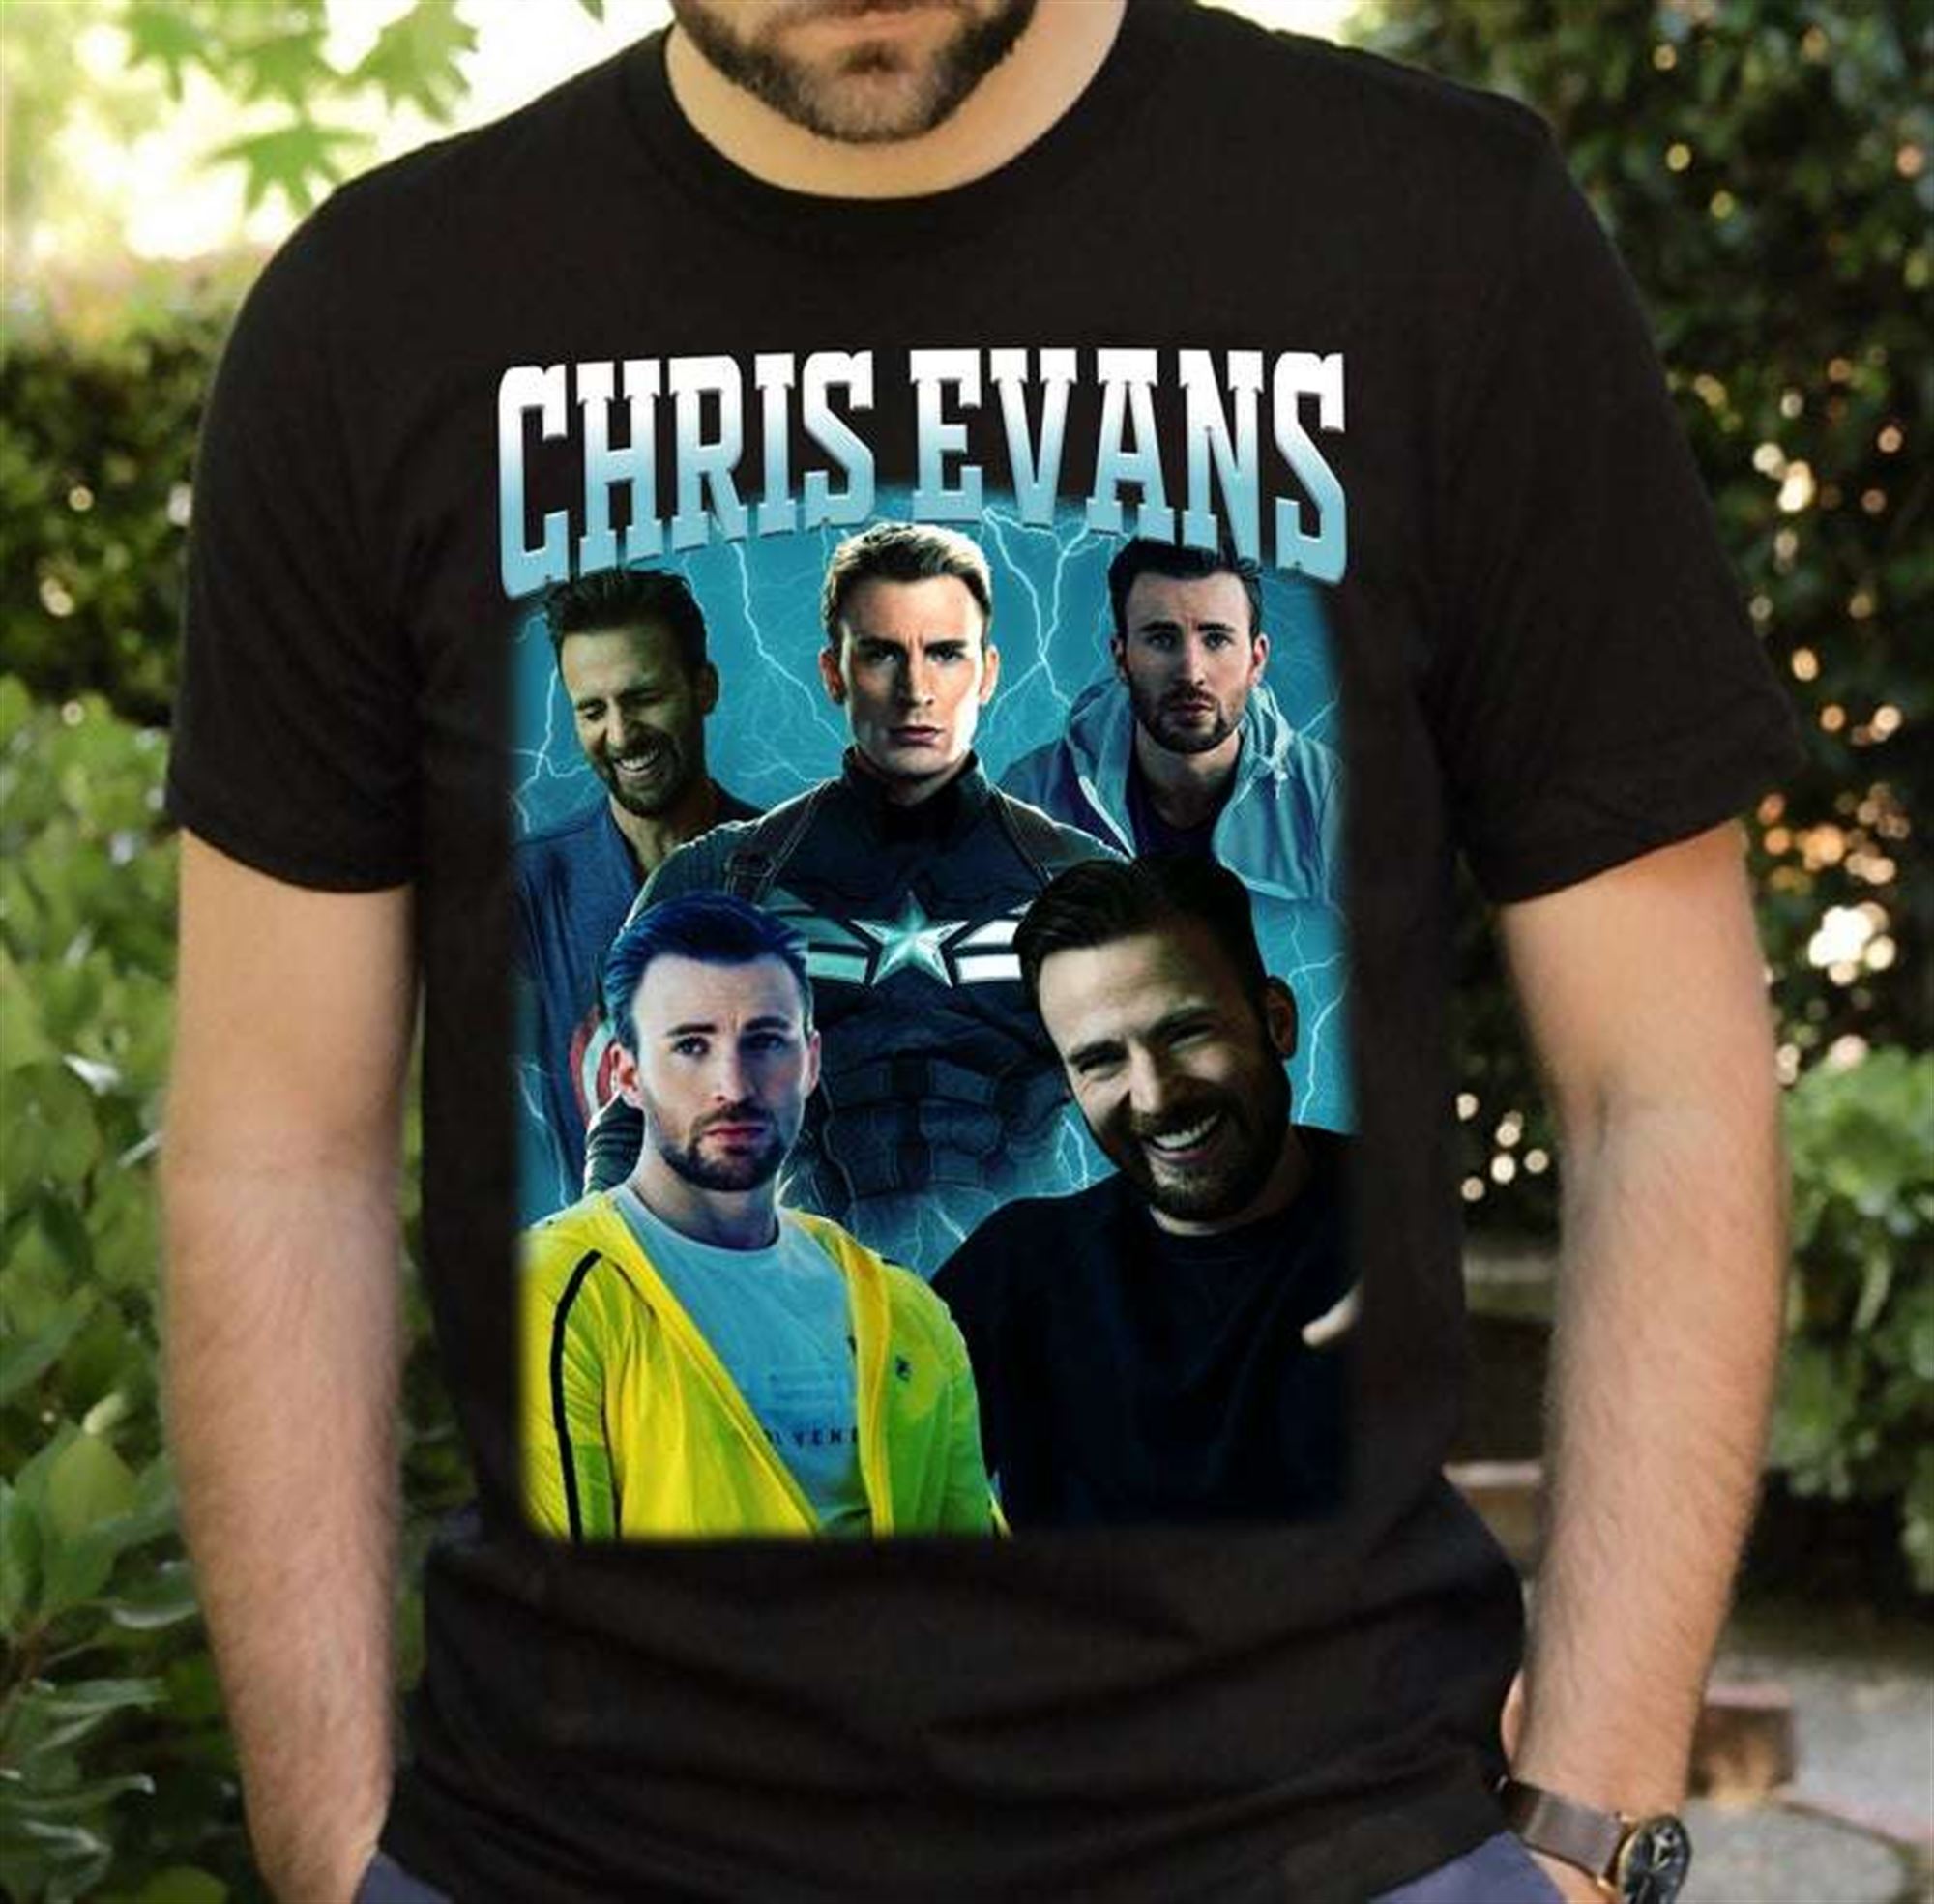 Chris Evans Vintage Classic Unisex T Shirt Size Up To 5xl